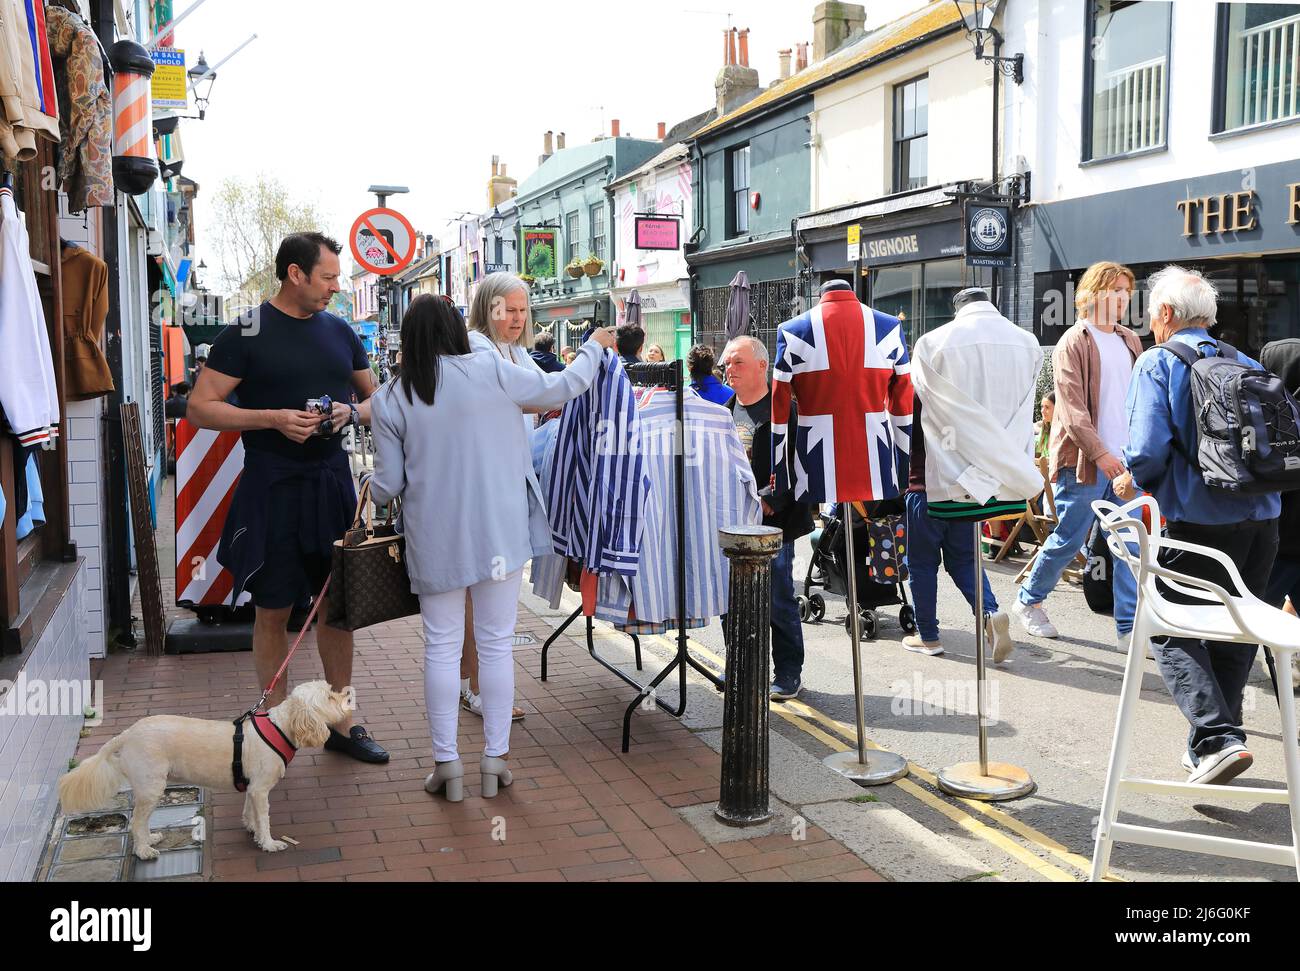 Soleil printanier sur le nord de Laine à Brighton, un quartier populaire avec une ambiance bohème, plein de boutiques et d'étals indépendants, à East Sussex, Royaume-Uni Banque D'Images